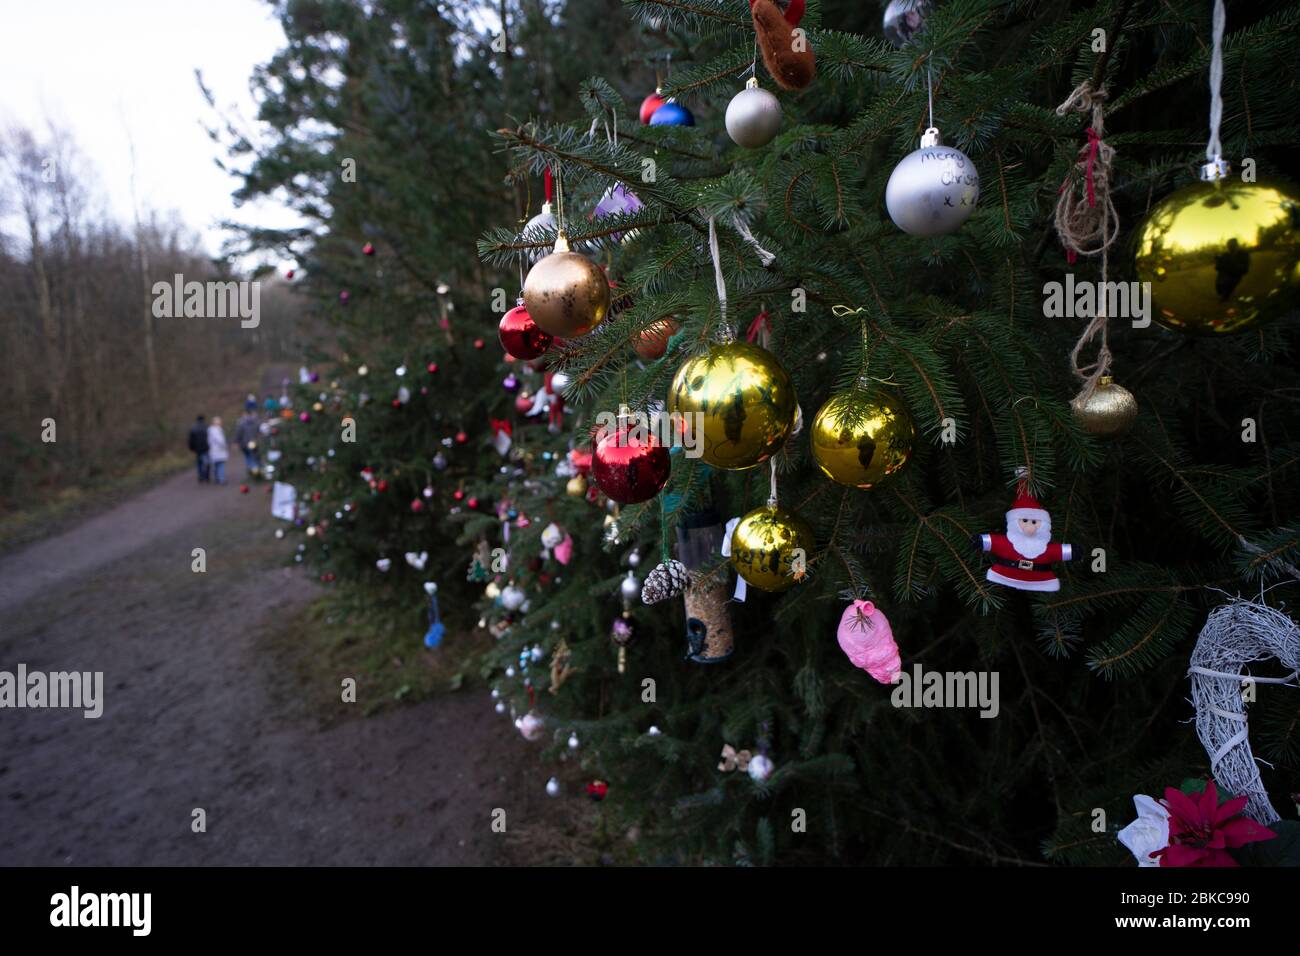 Weihnachtsbaum mit Bauble-Dekor - Yorkshire, England, UK Stockfoto